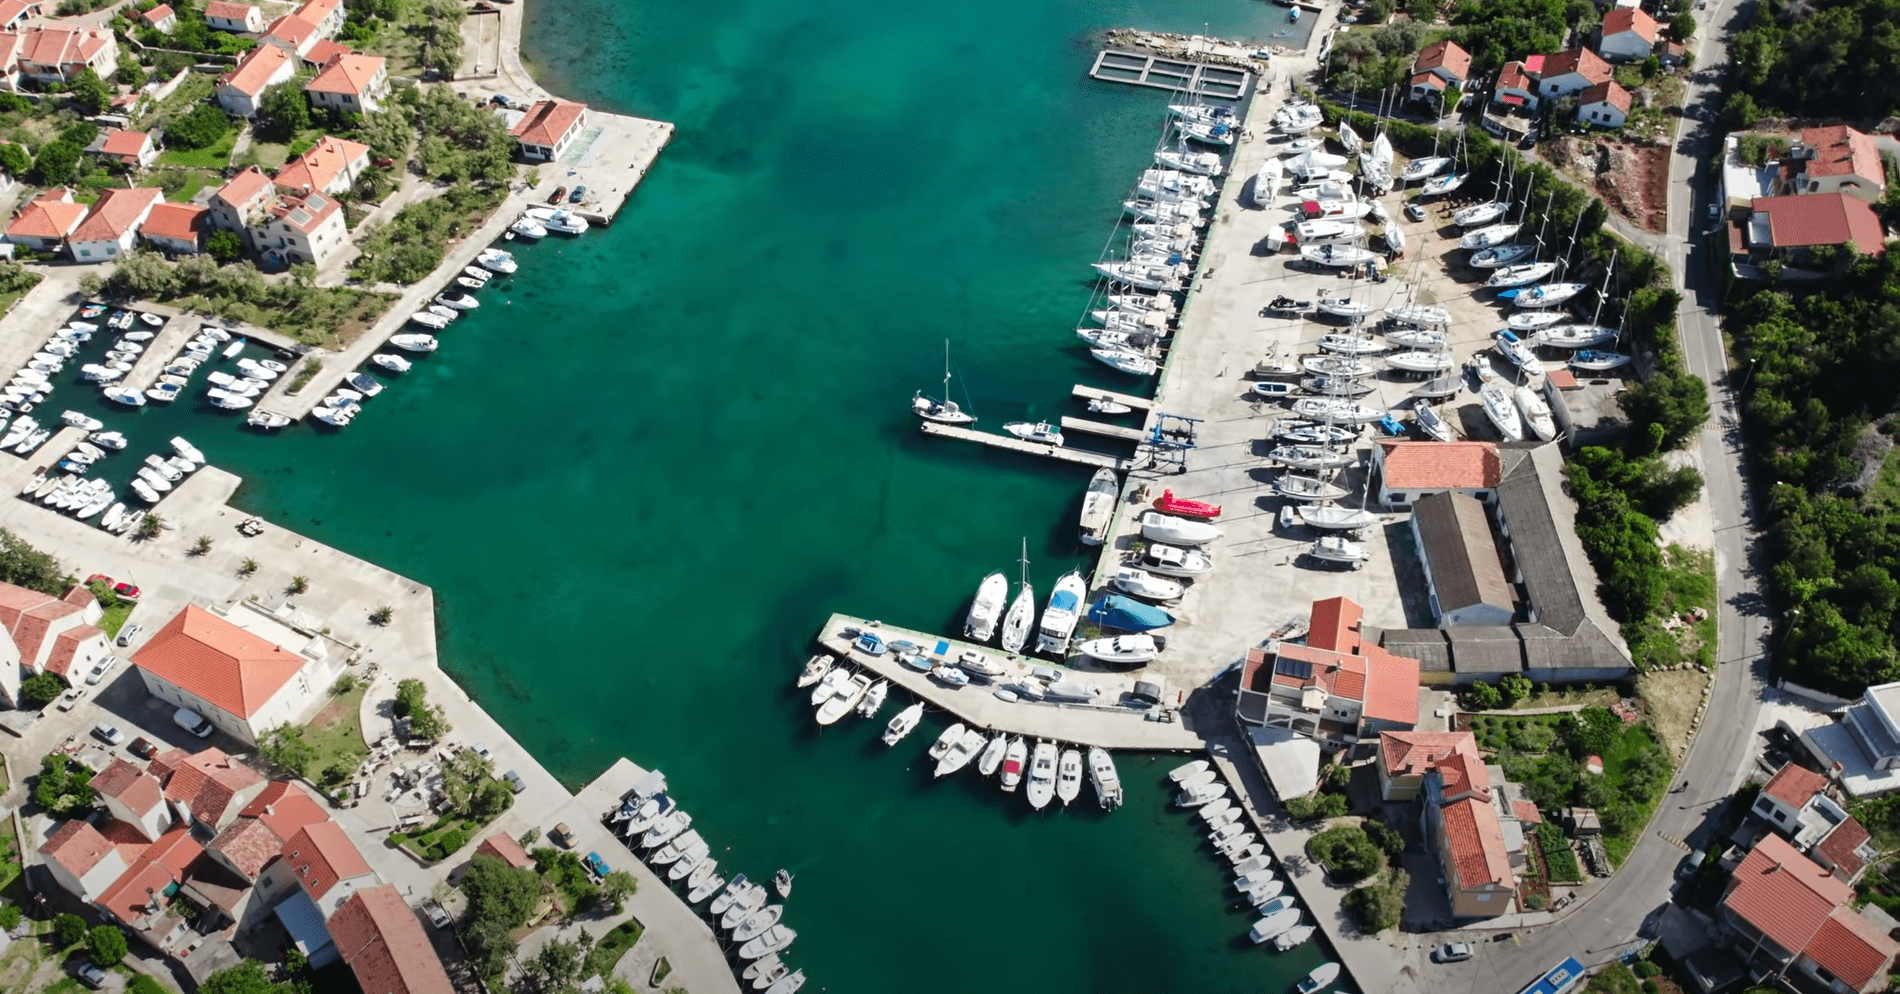 Dalmacja I Wyspa Iž - Chorwacja i Adriatyk